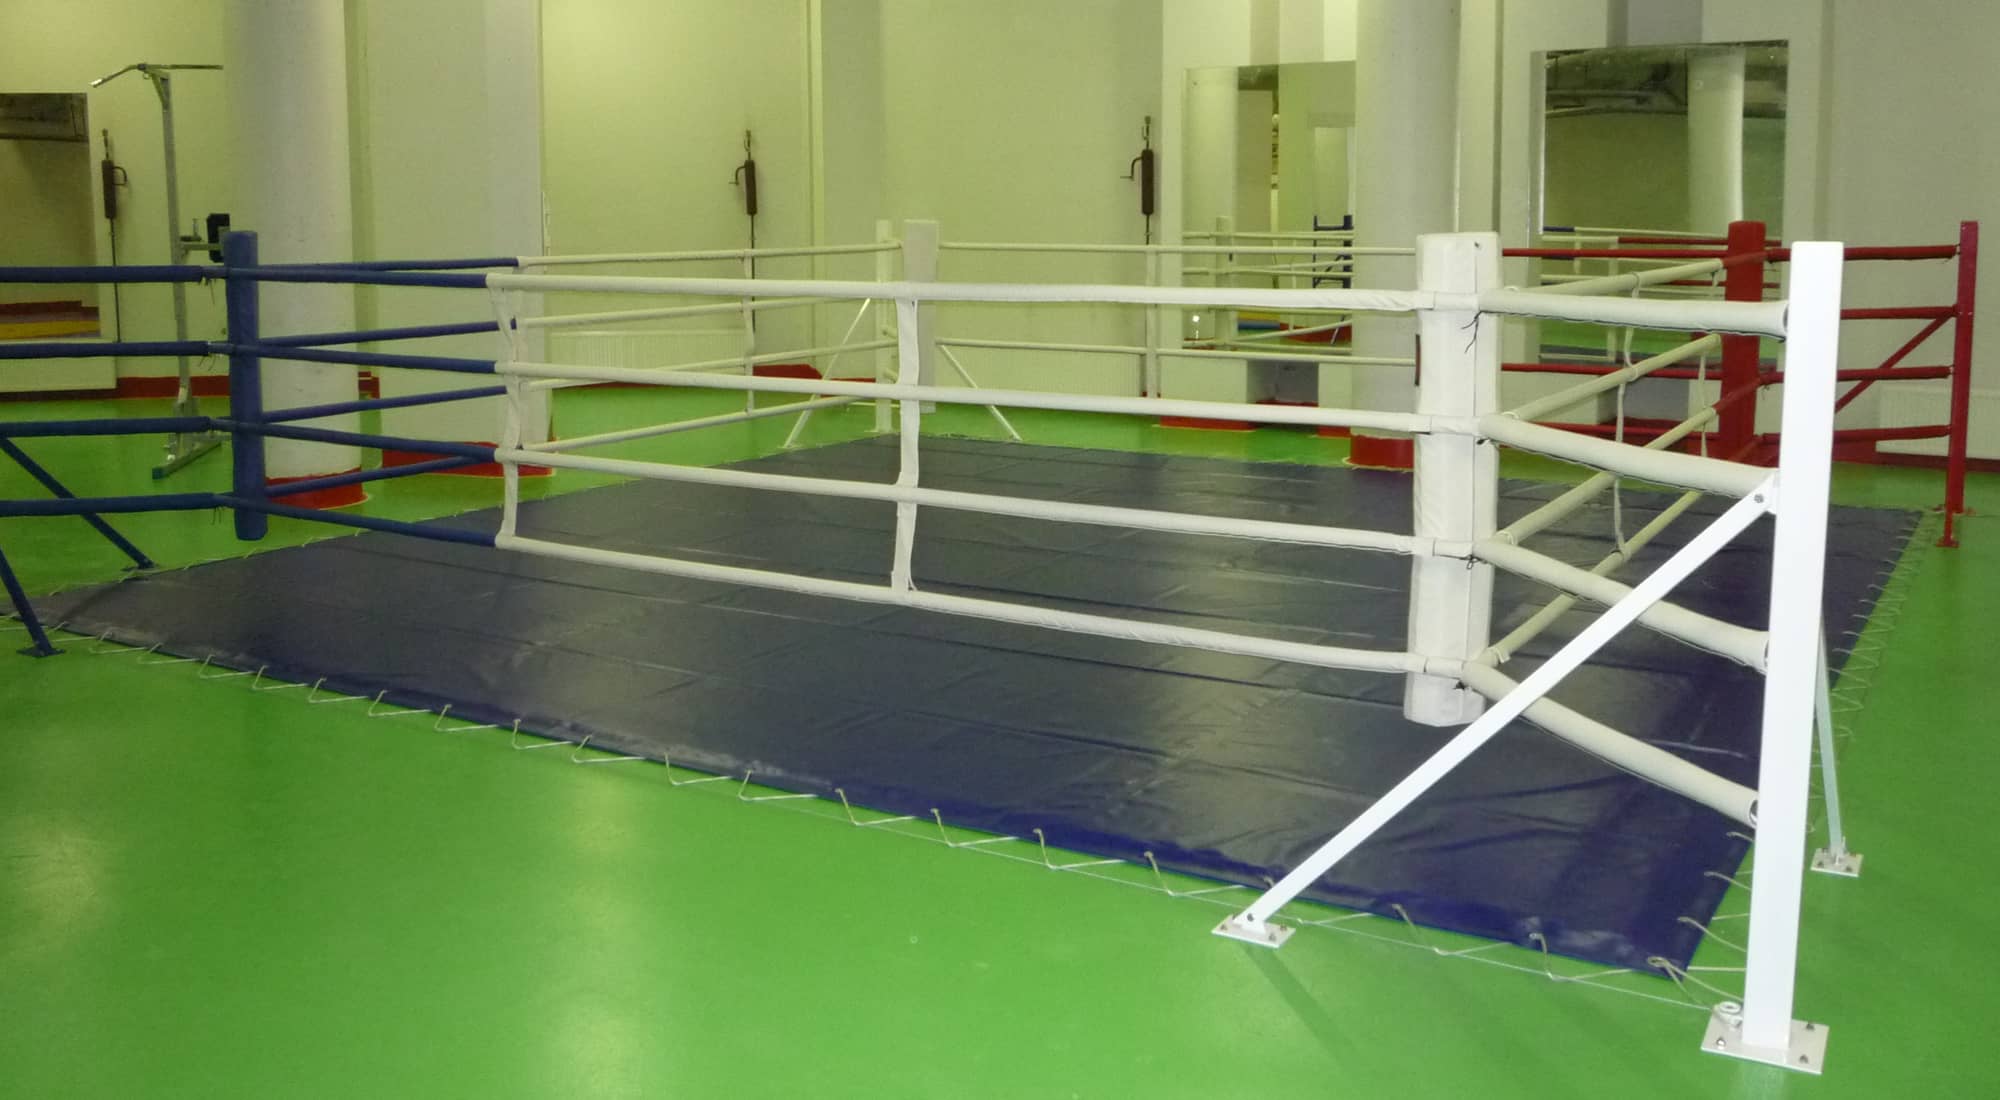 Ринг боксерский напольный Totalbox на упорах размер по канатам 5×5 м РНУ 5 2000_1100